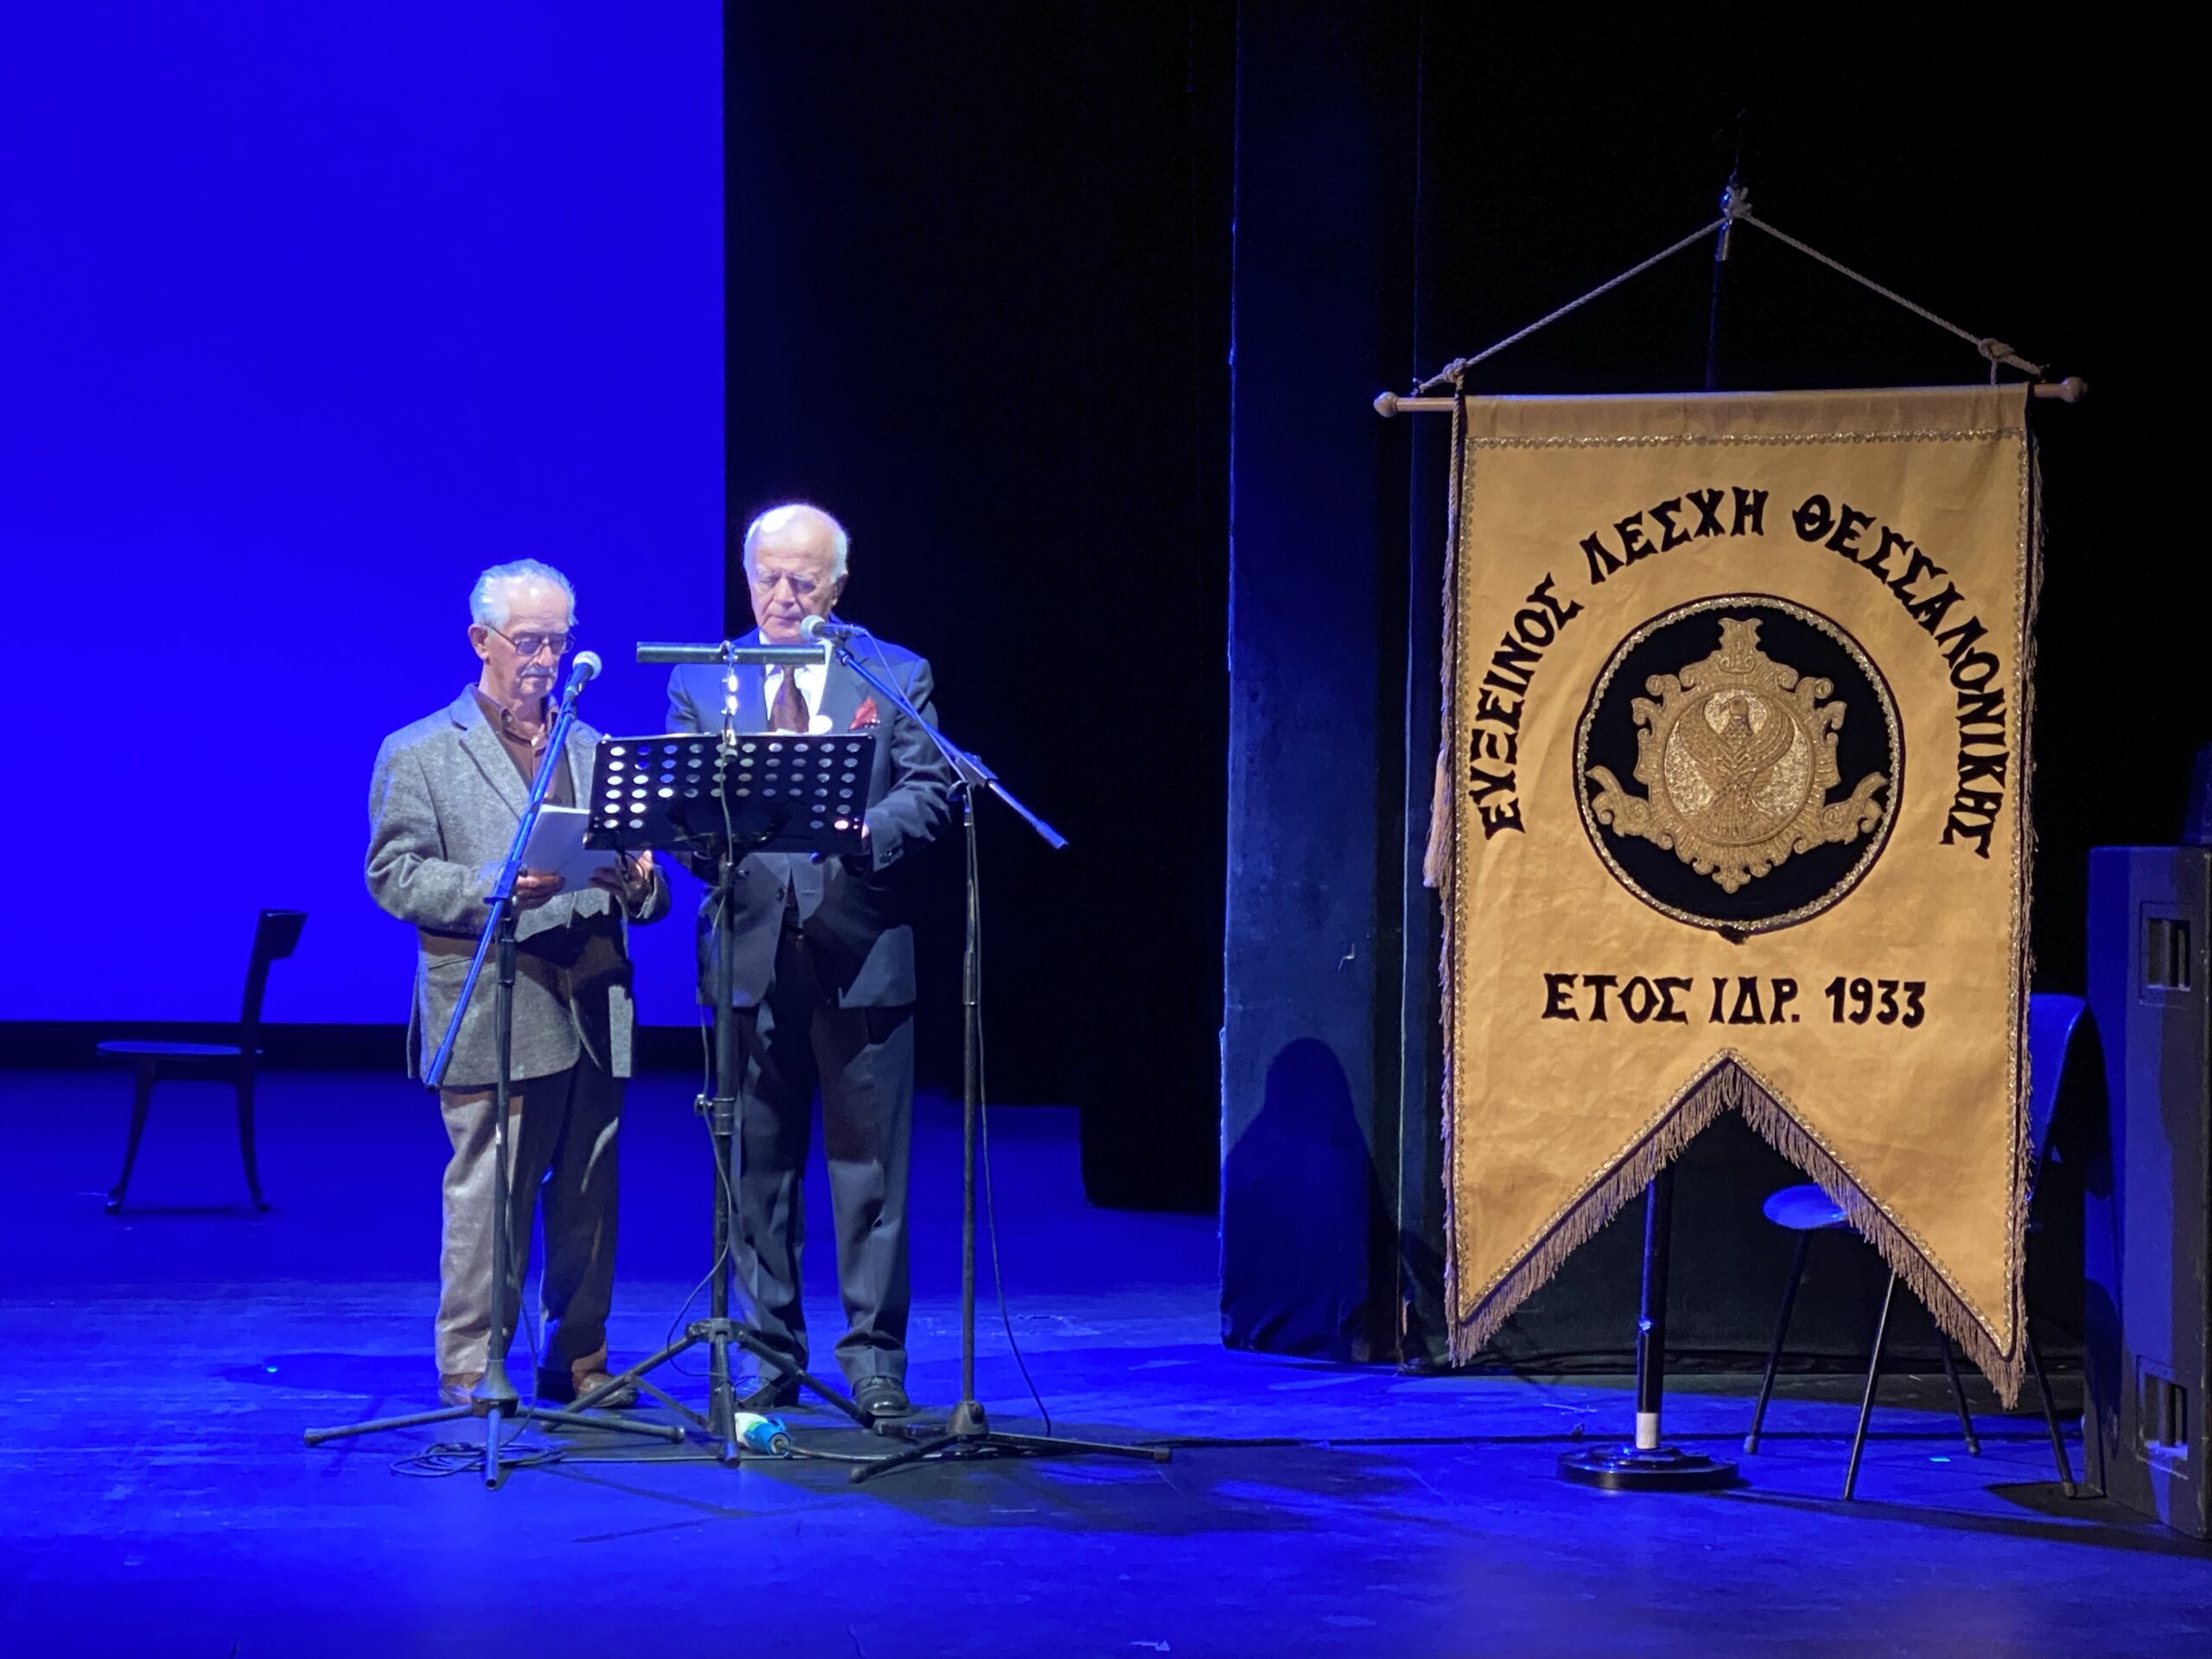 Εκδήλωση για τα 90 χρόνια της Ευξείνου Λέσχης Θεσσαλονίκης στο Βασιλικό Θέατρο